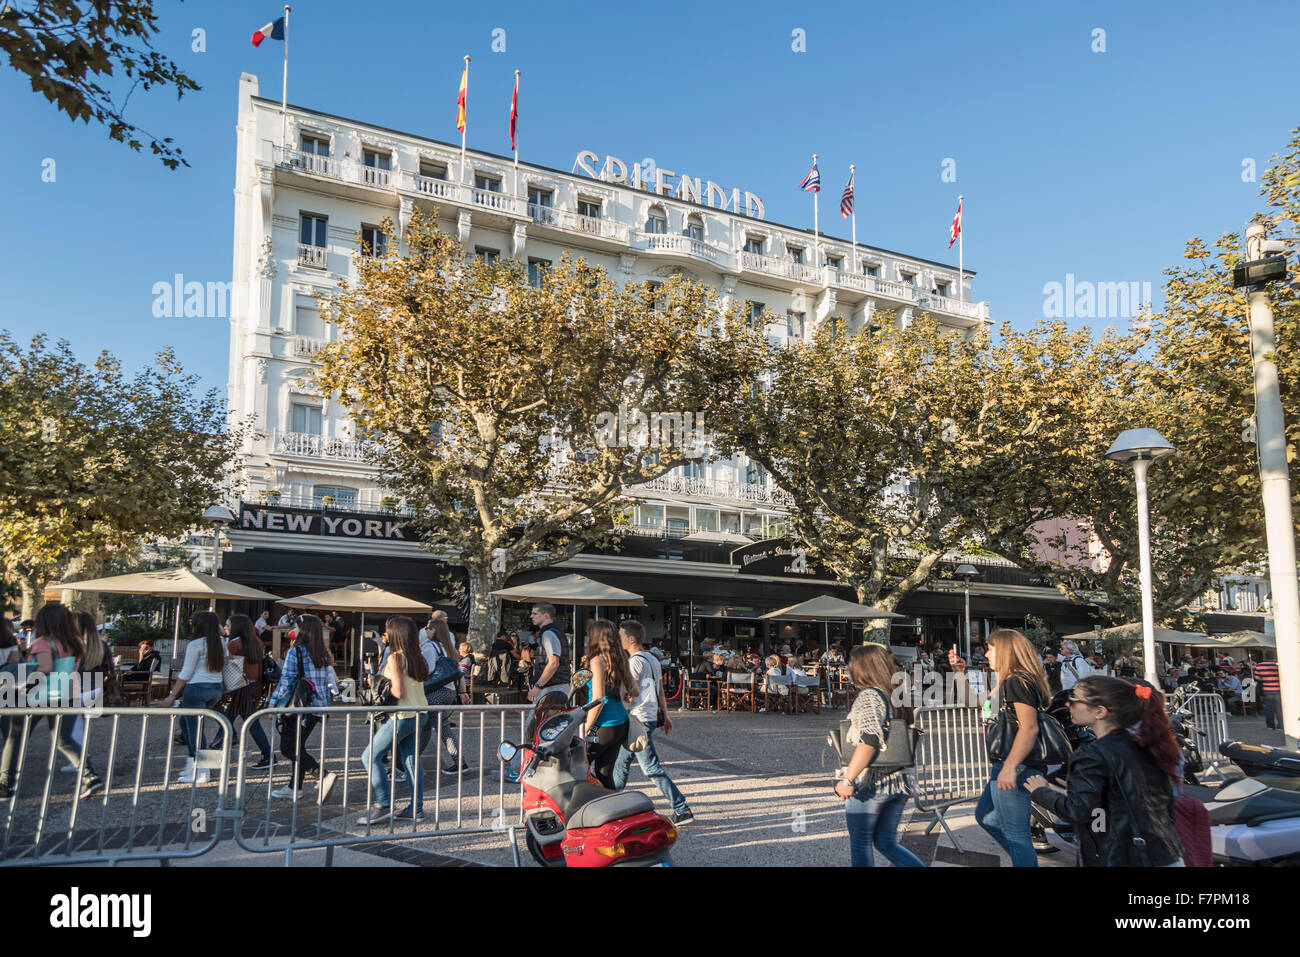 Espléndido hotel, con fachada, palmera, Cannes, Cote d'Azur, Francia Foto de stock